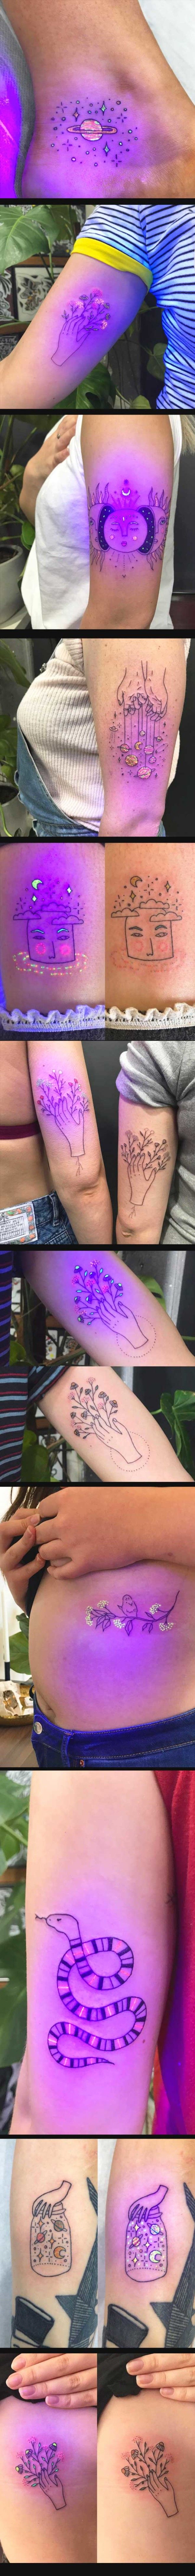 Secret Ultraviolet Tattoos Comes To Life Under Black Light